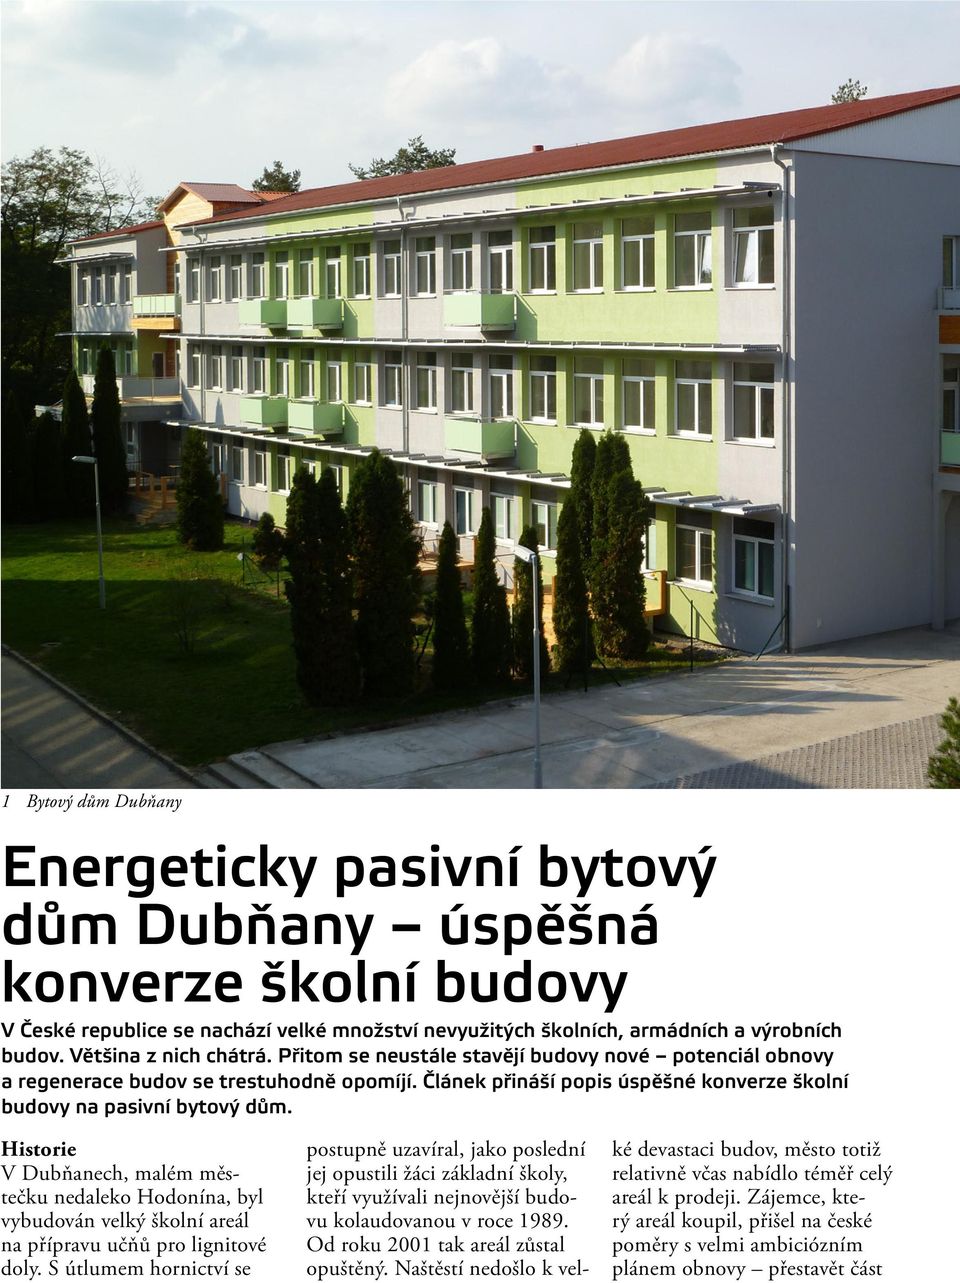 Historie V Dubňanech, malém městečku nedaleko Hodonína, byl vybudován velký školní areál na přípravu učňů pro lignitové doly.